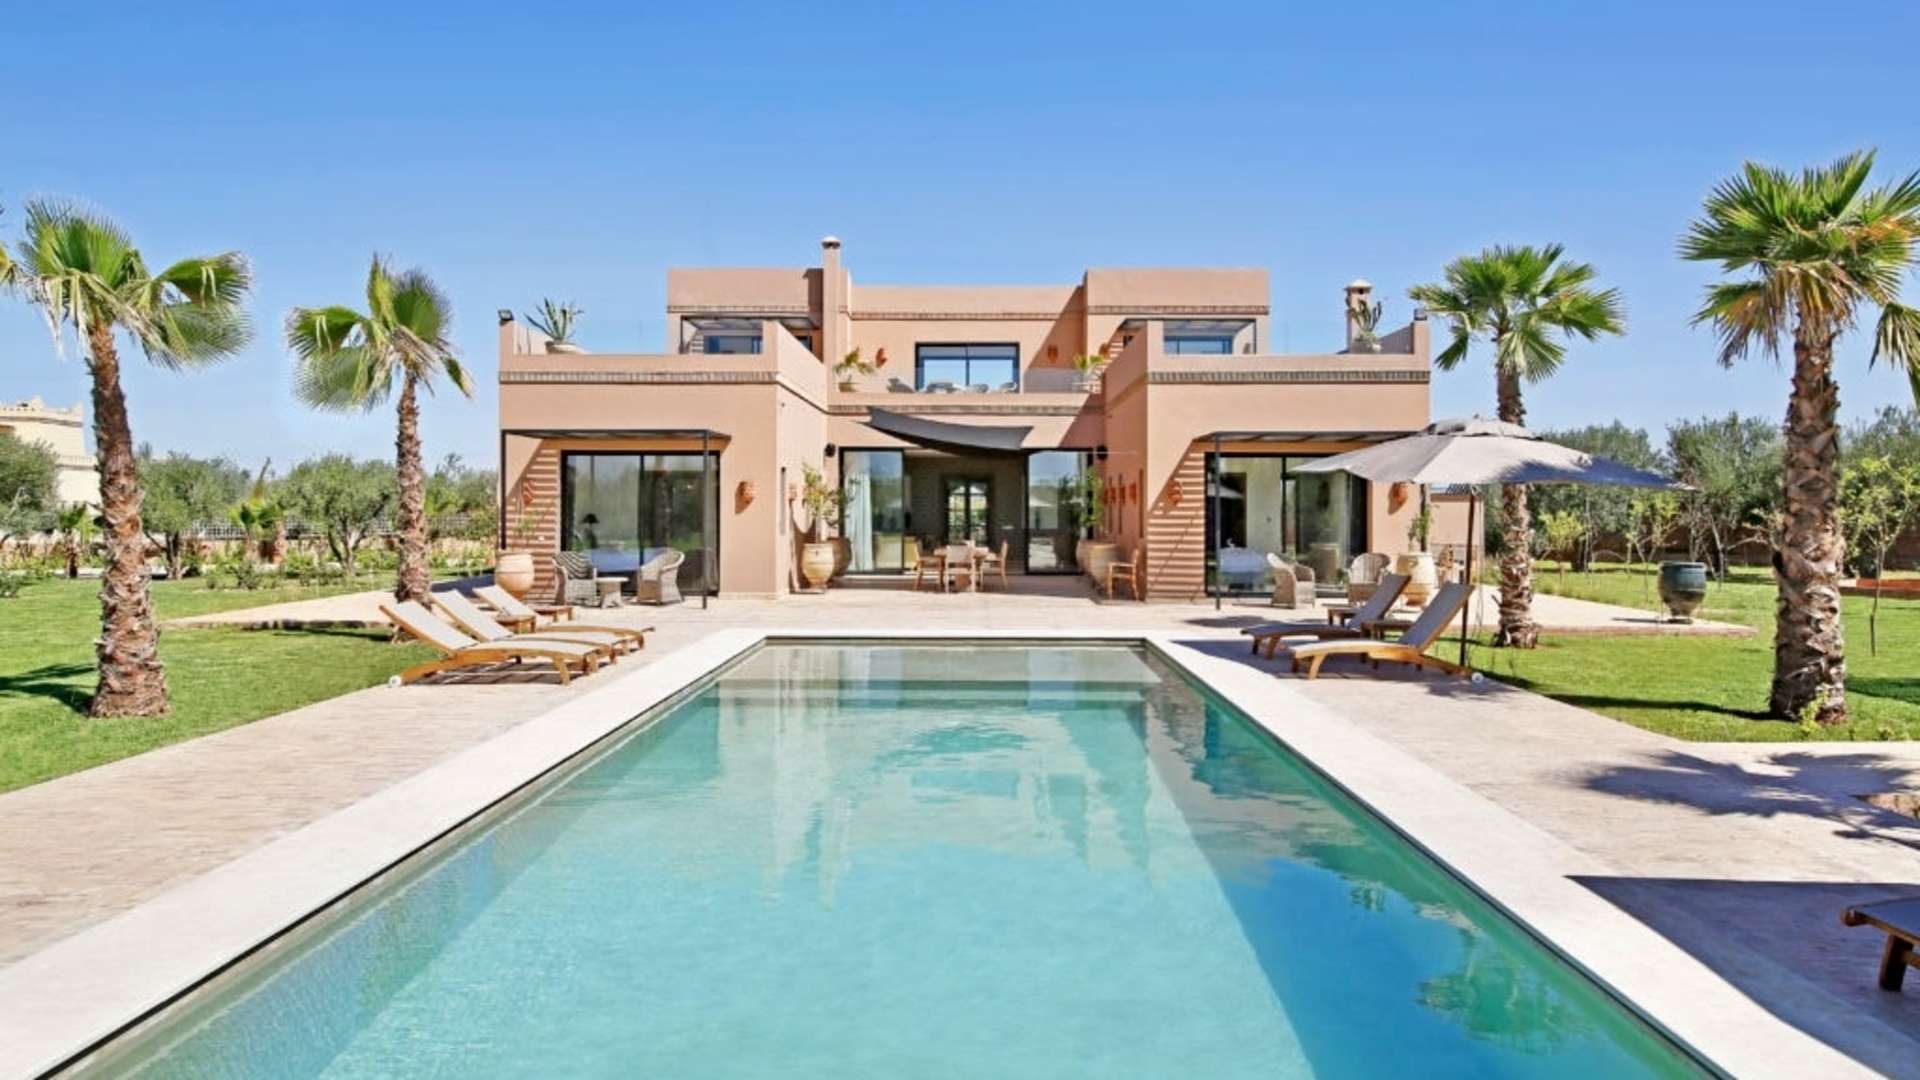 Location de vacances,Villa,Villa Privée de 5 suites sur un jardin de 4500M2 Route de Fès, Marrakech,Marrakech,Route de Fès